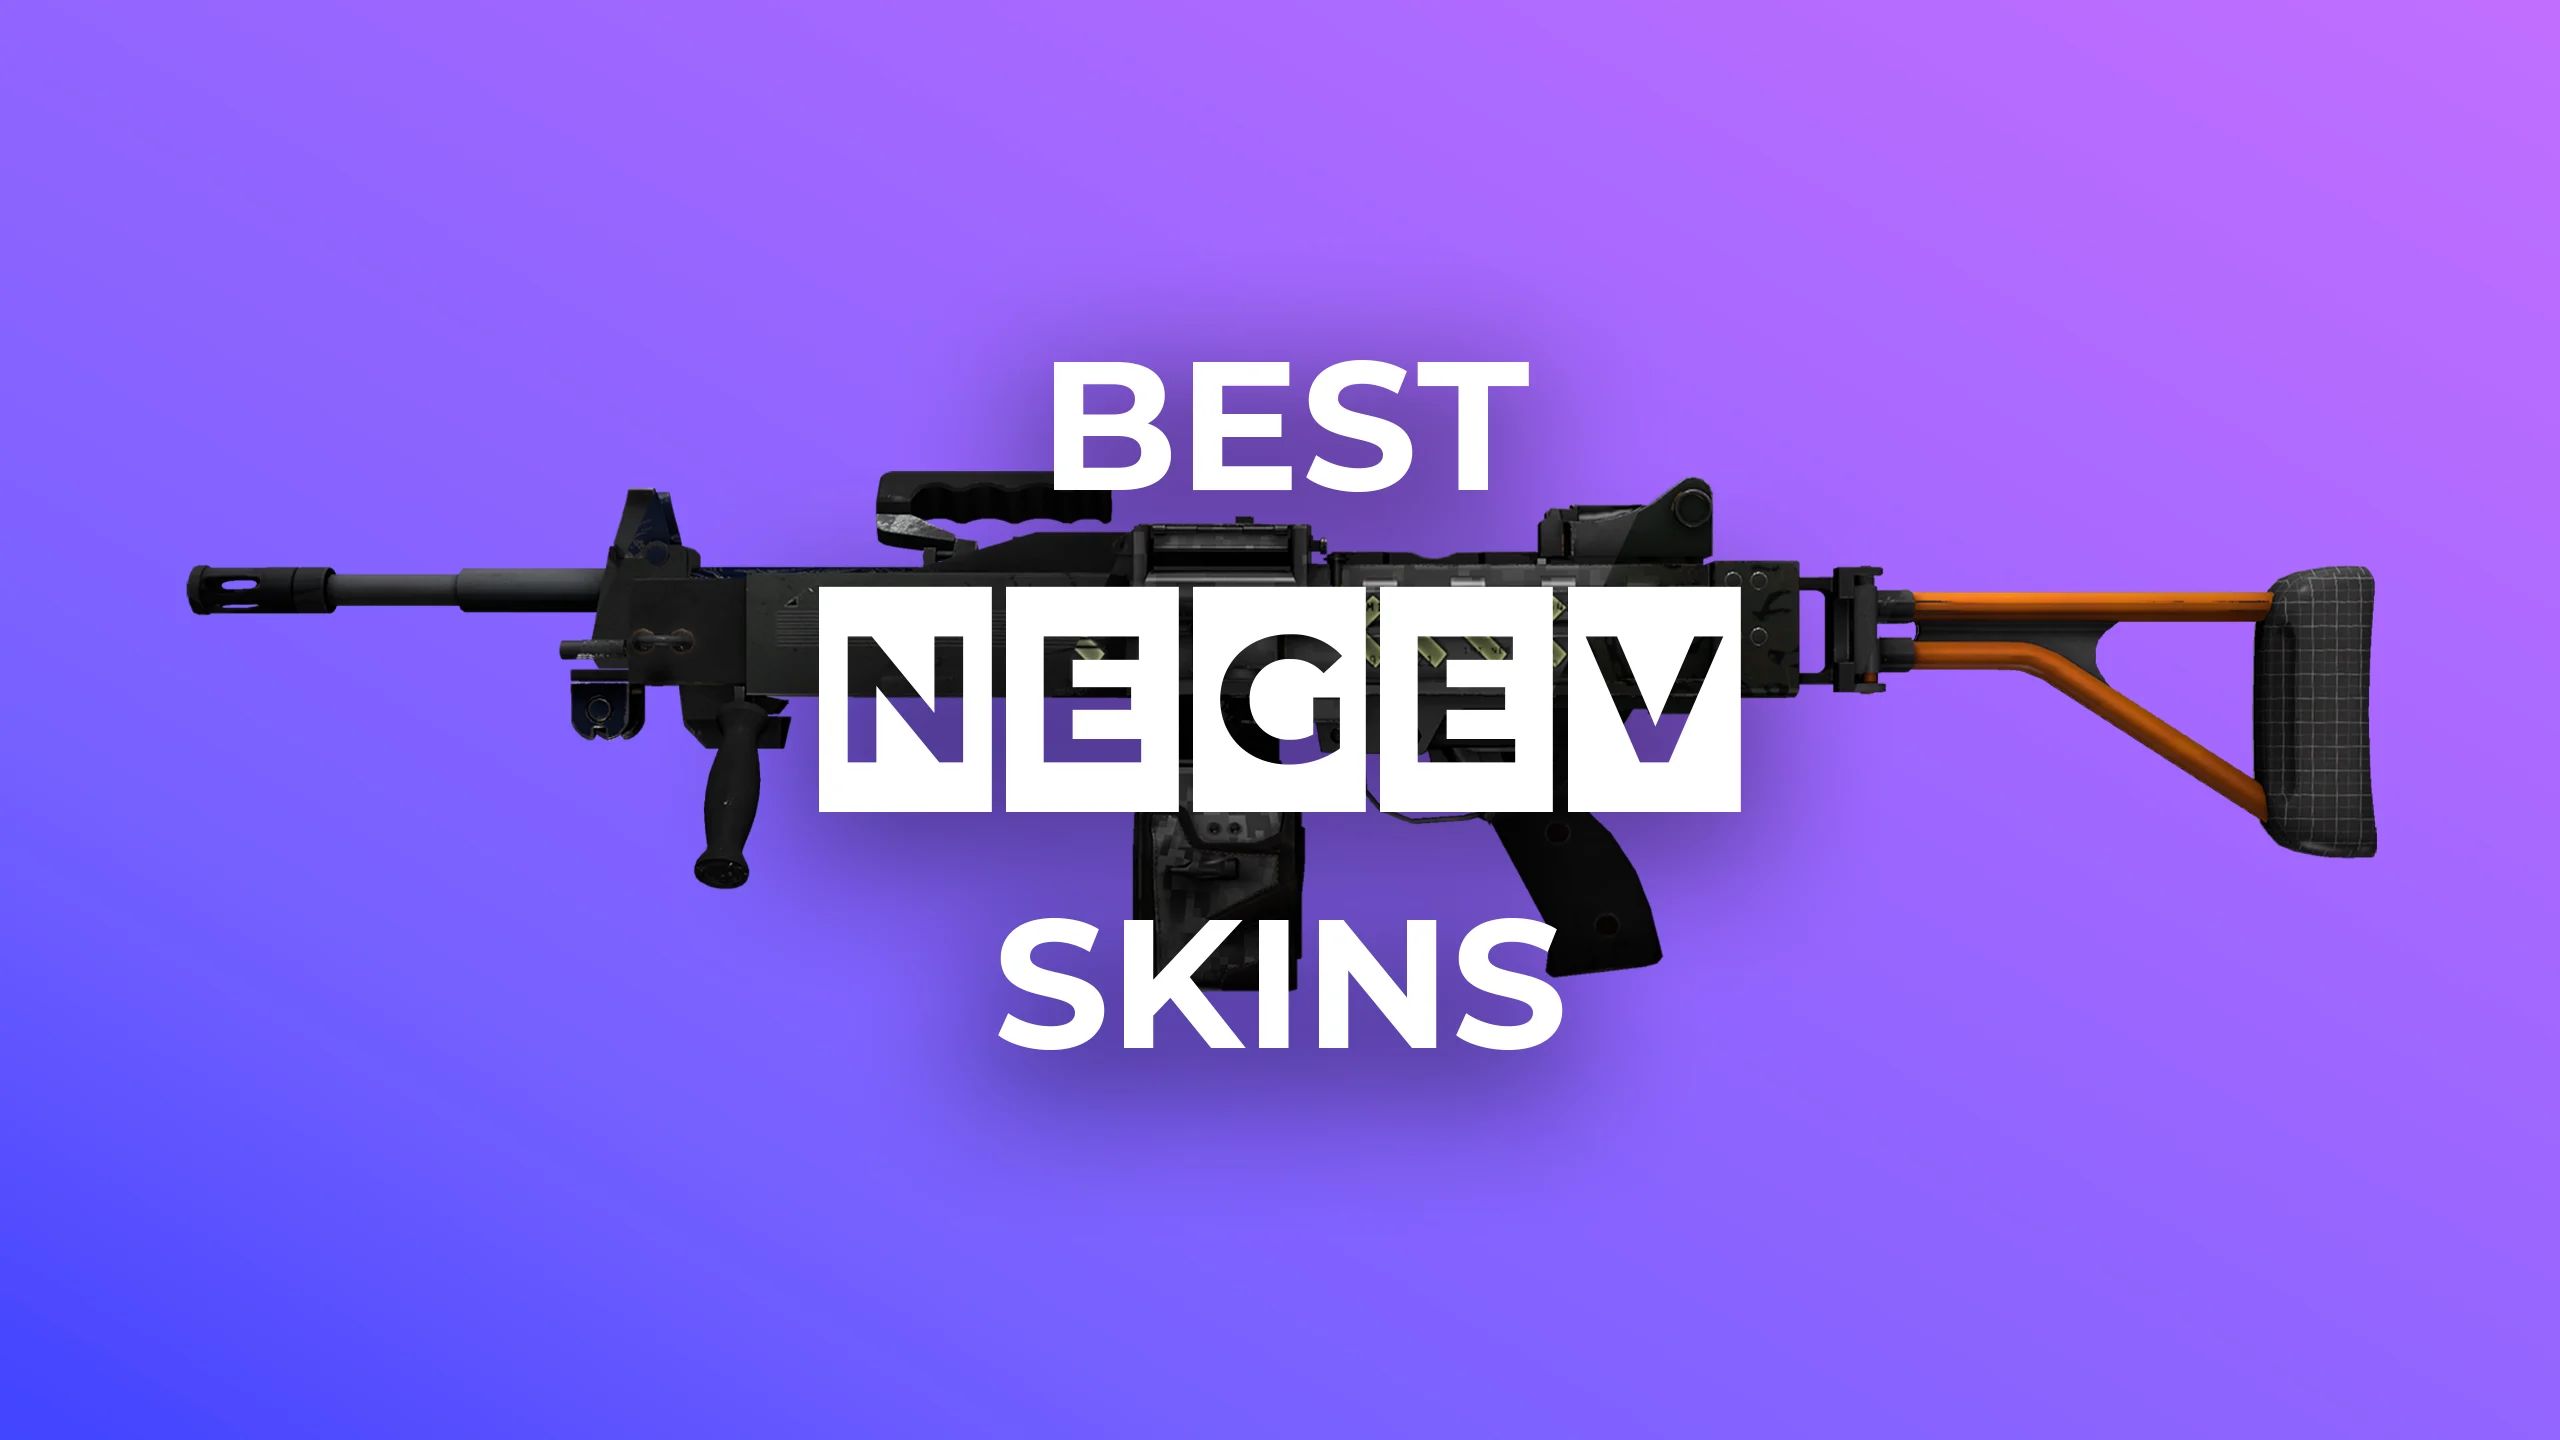 Best Negev Skins 2022